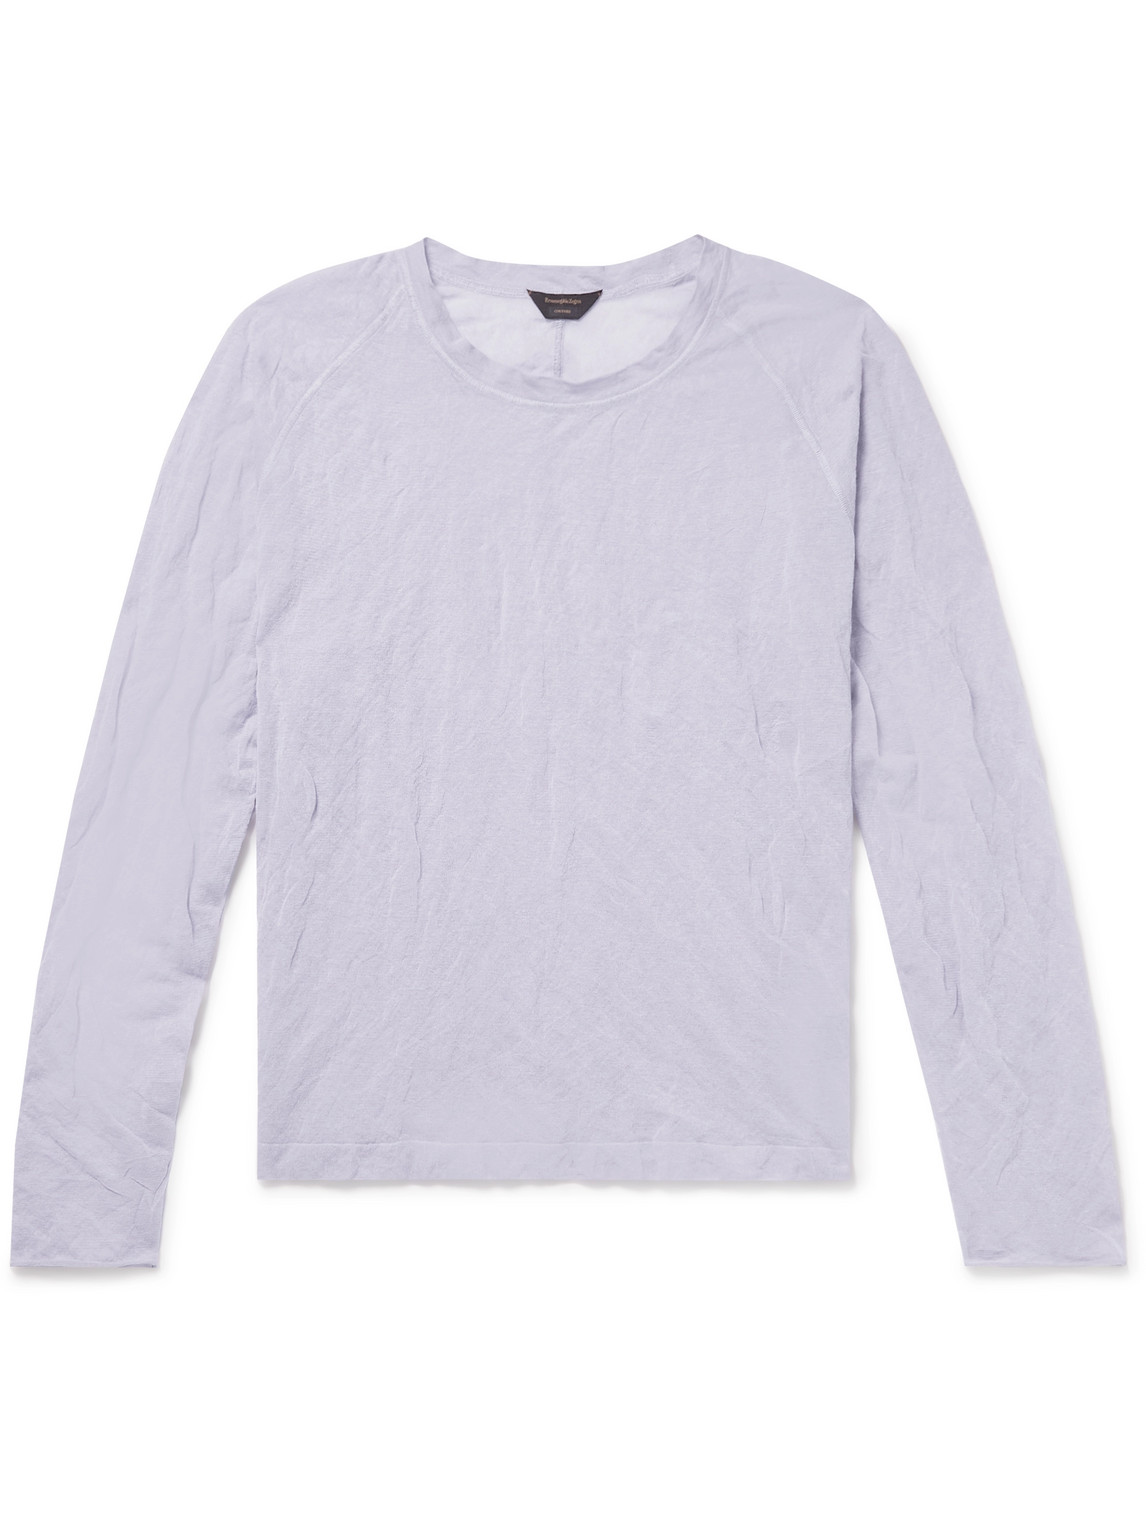 Zegna Crinkled Cotton-Blend T-Shirt